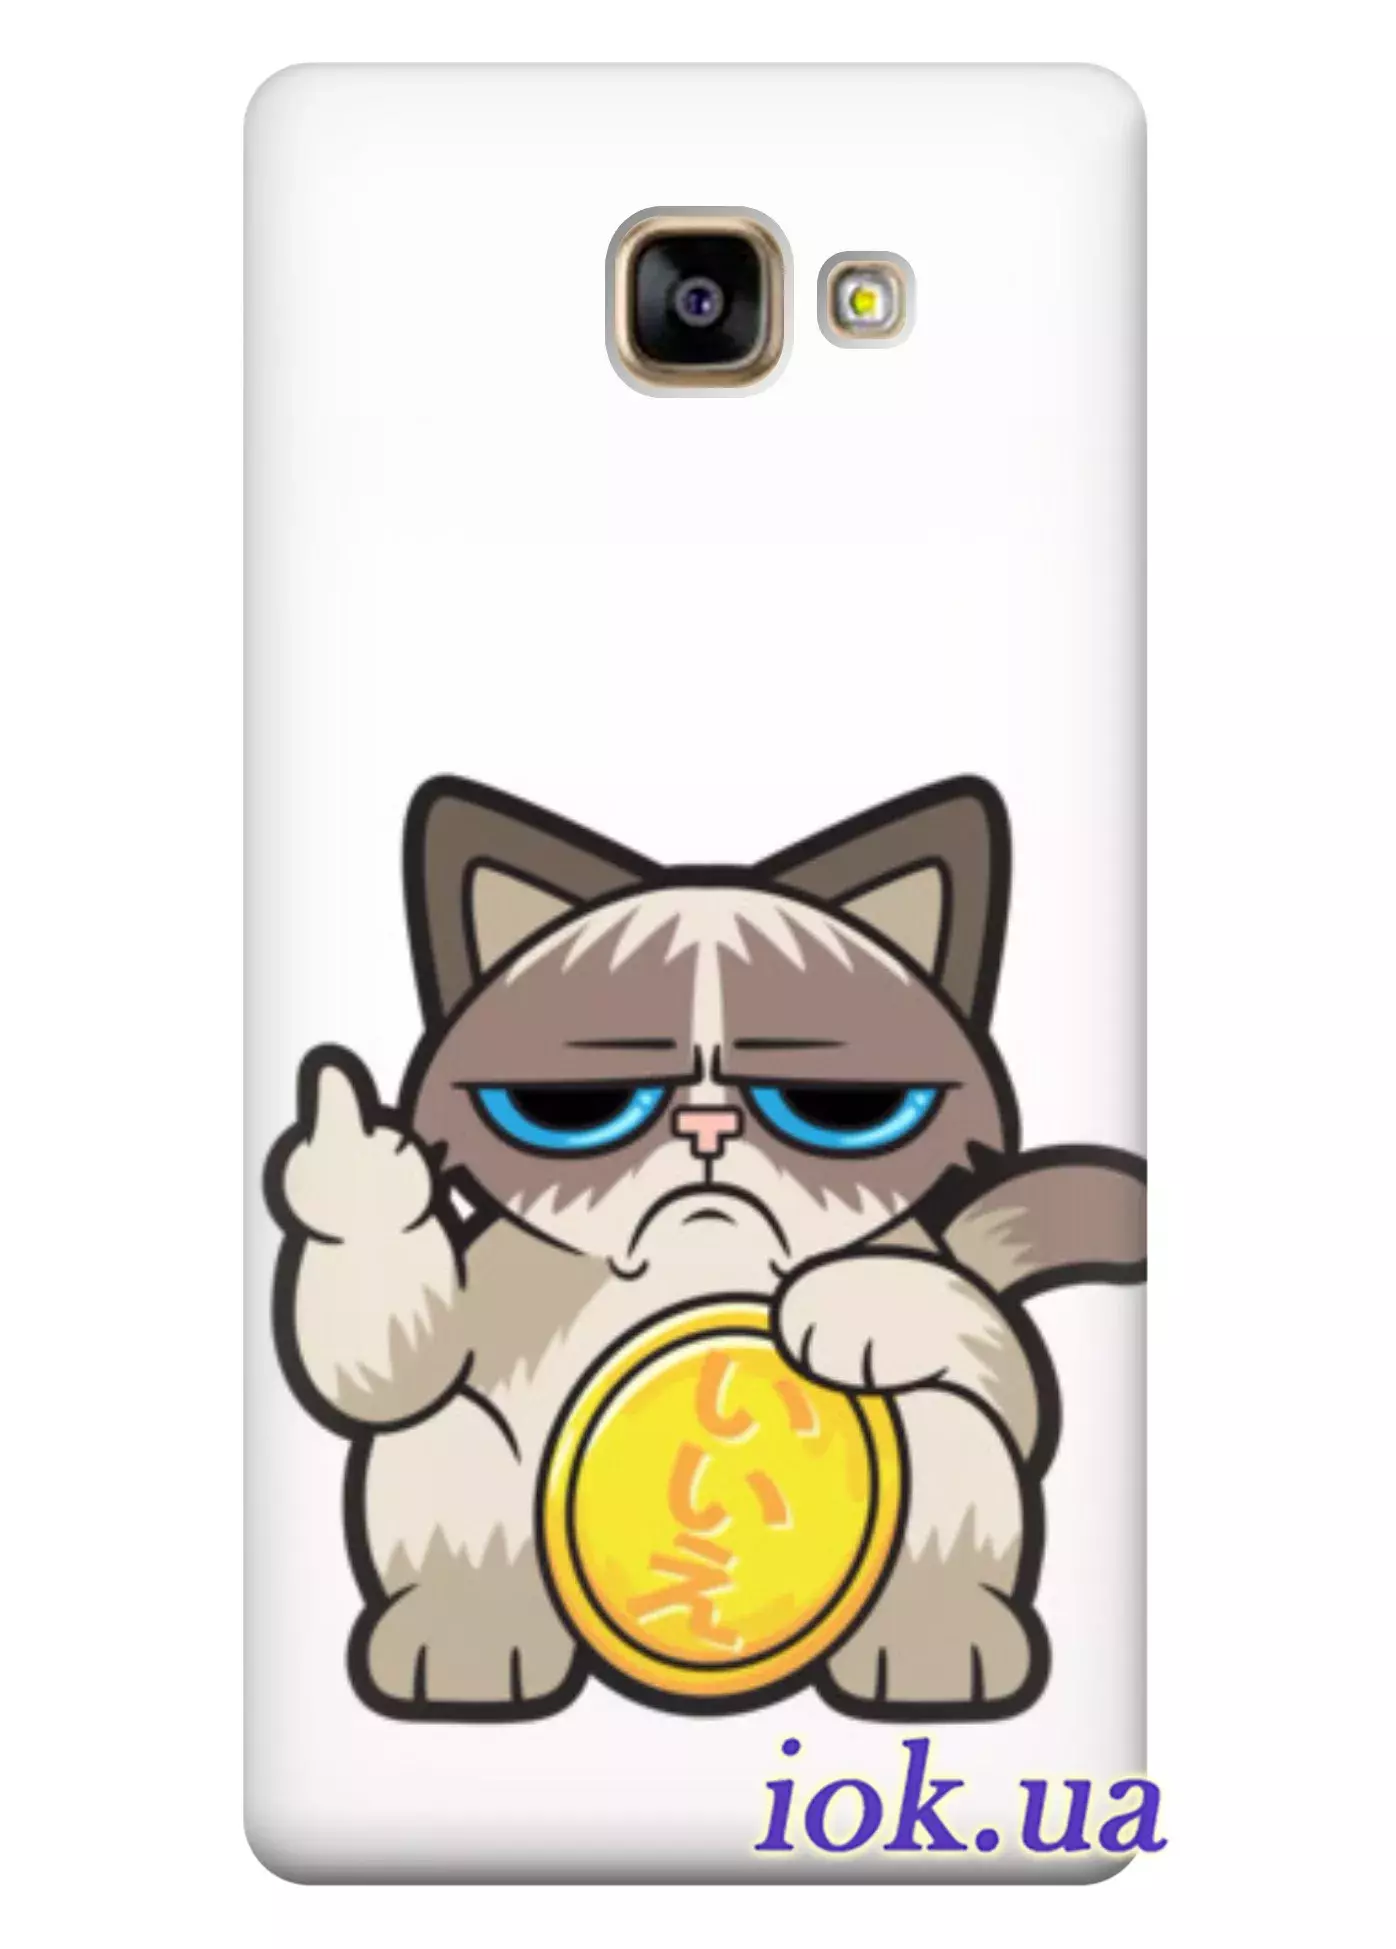 Чехол для Galaxy A7 (2016) - Недовольный кот